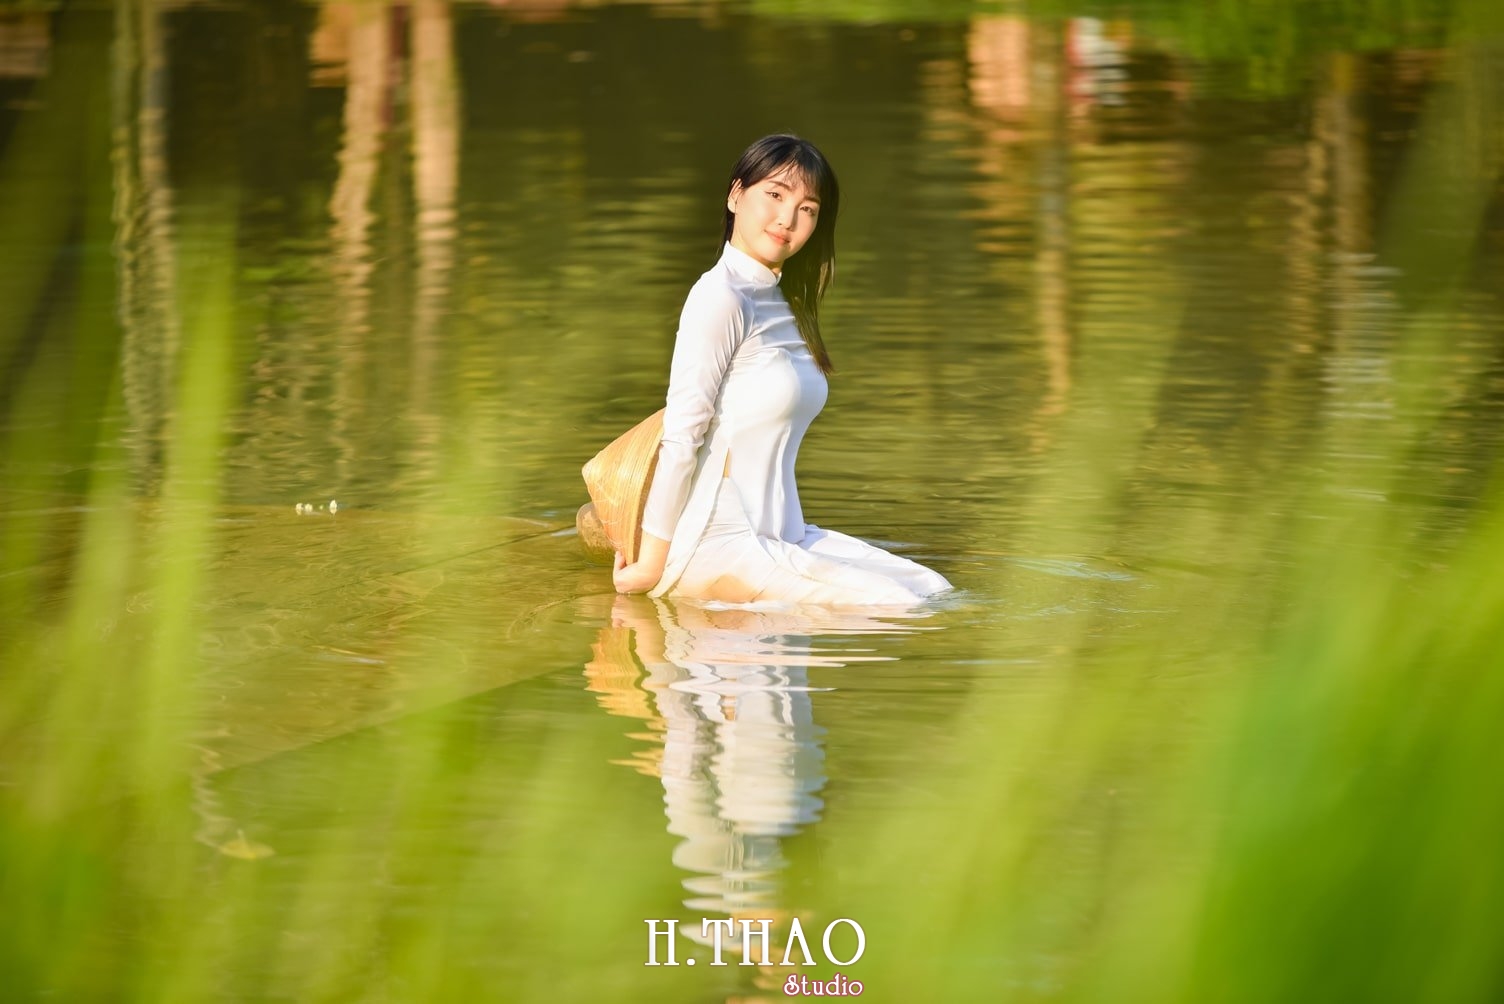 Anh ao dai 18 min - Concept chụp ảnh ngoại cảnh đẹp mà chất– HThao Studio